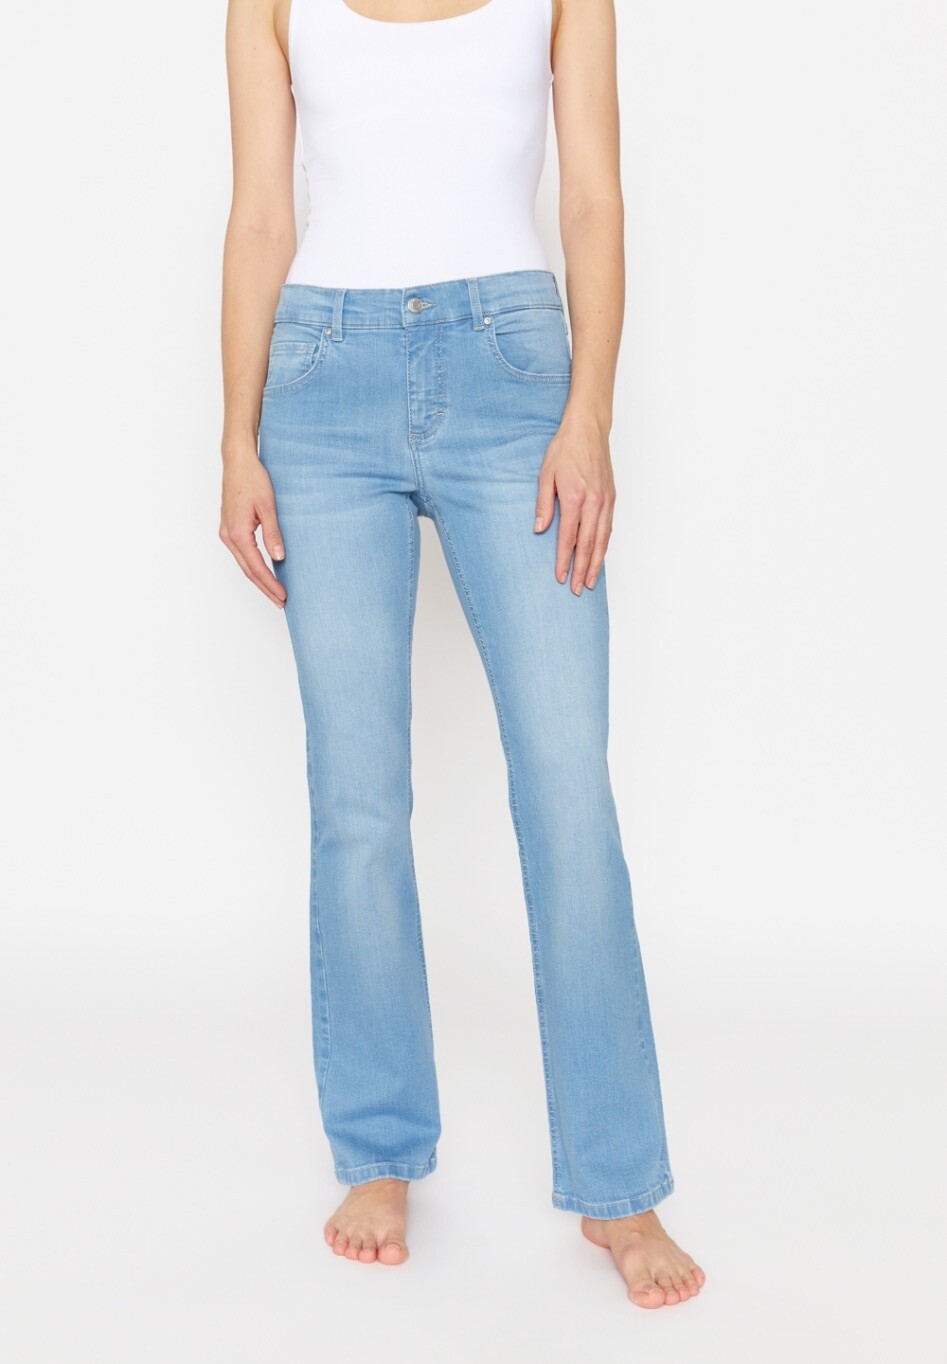 Angels jeans broek flare pijp light stone Leni 332, Size: 36REGULAR